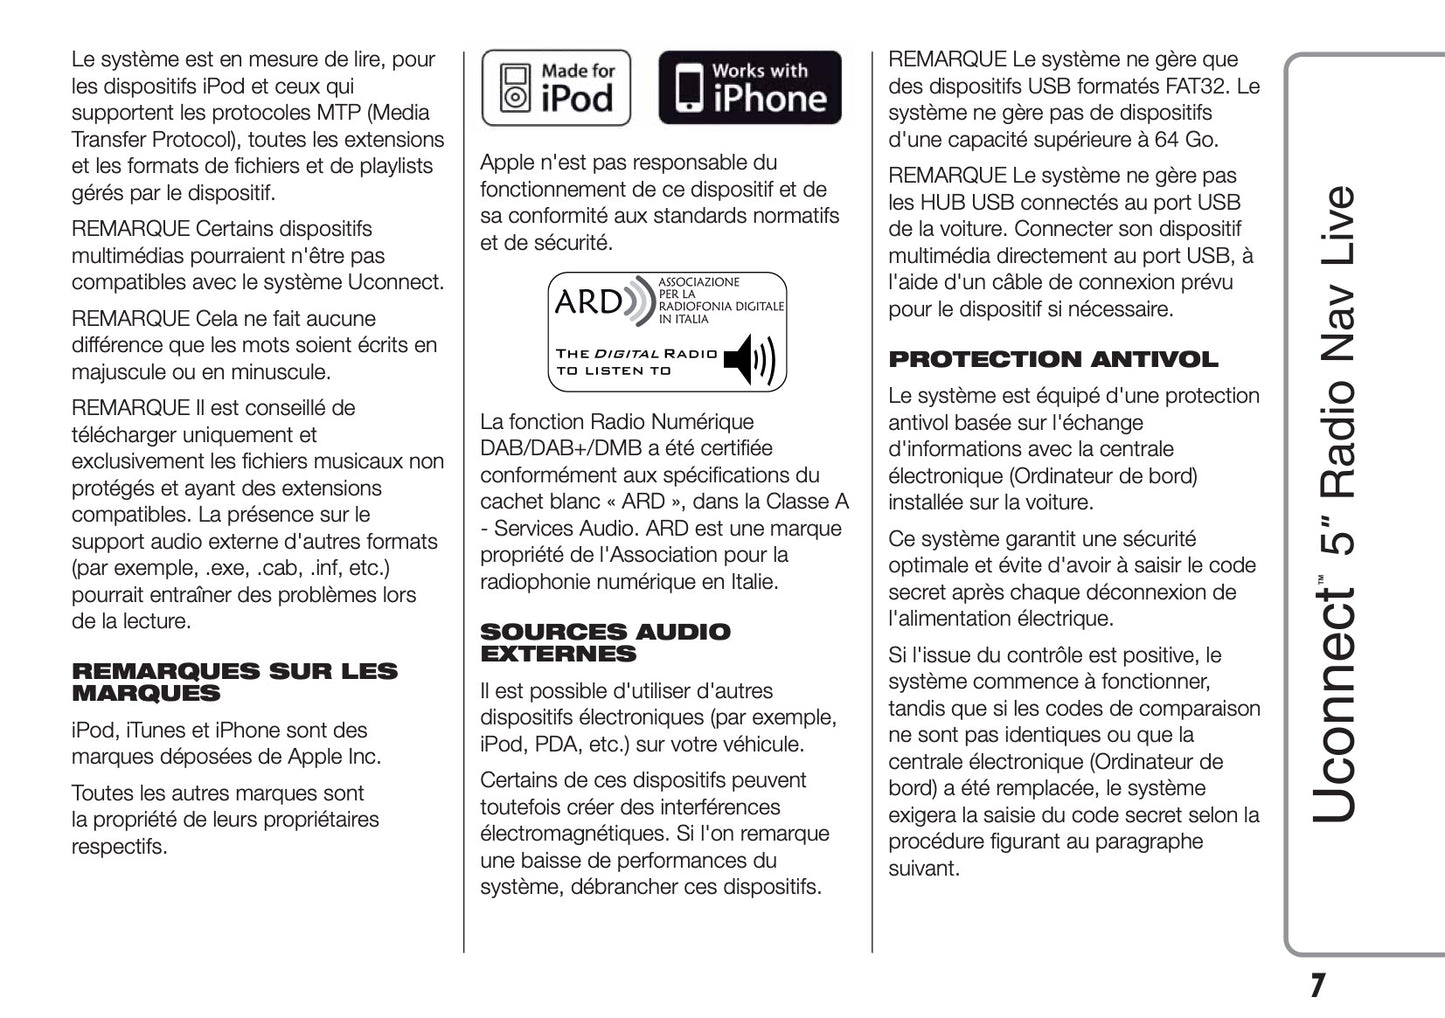 Fiat Doblo Uconnect Radio Nav 5.0 Guide d'utilisation 2015 - 2018